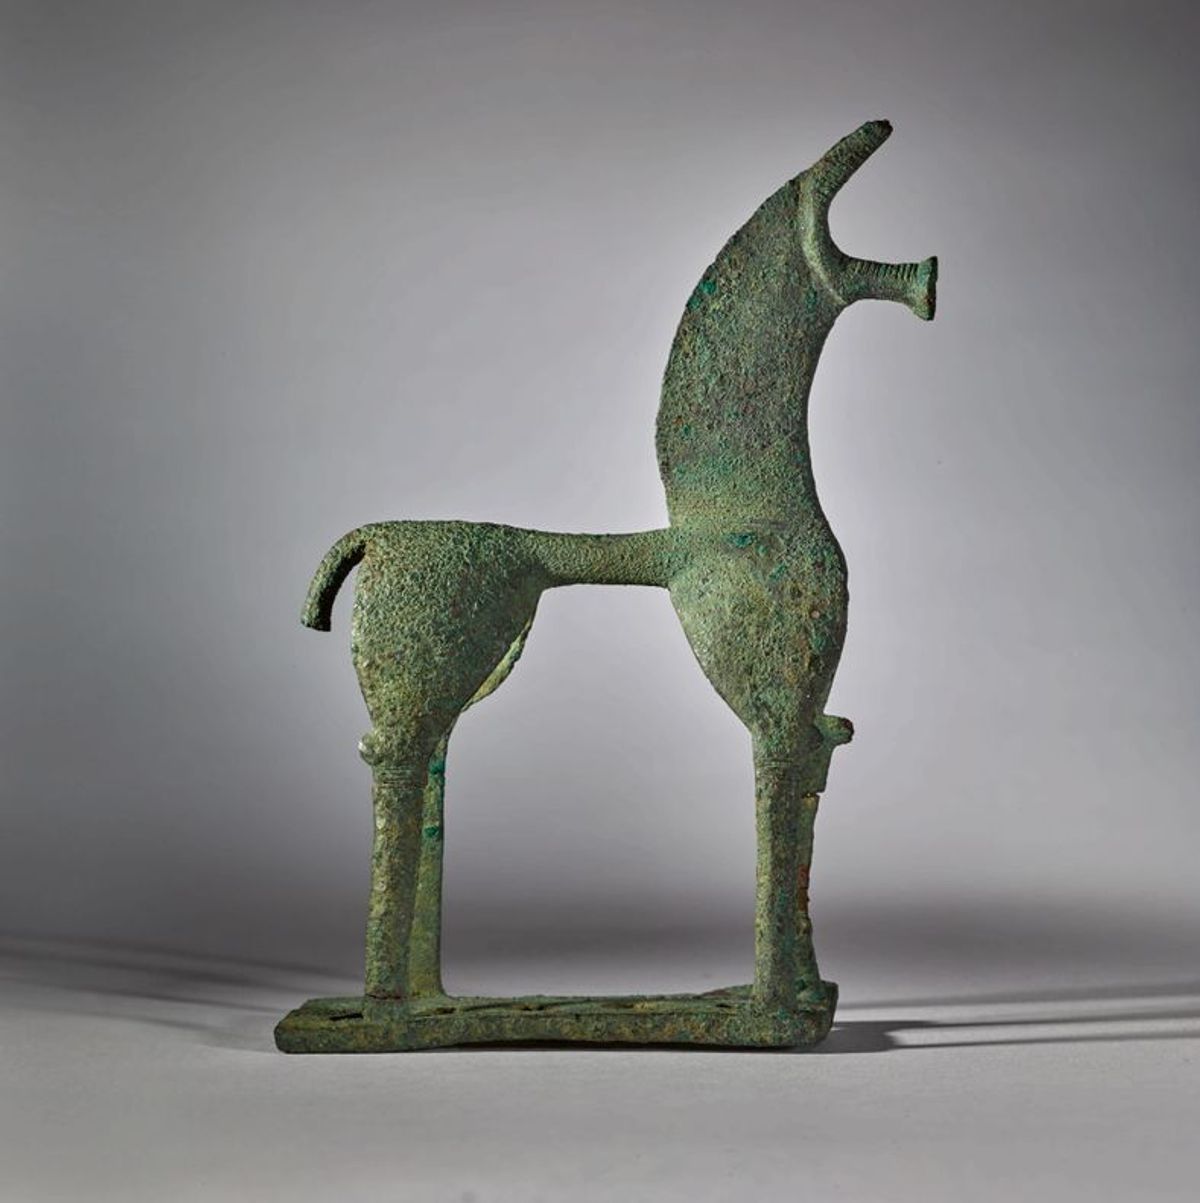 Ce bronze avait été retiré d’une vente en 2018 chez Sotheby’s. © Sotheby’s 